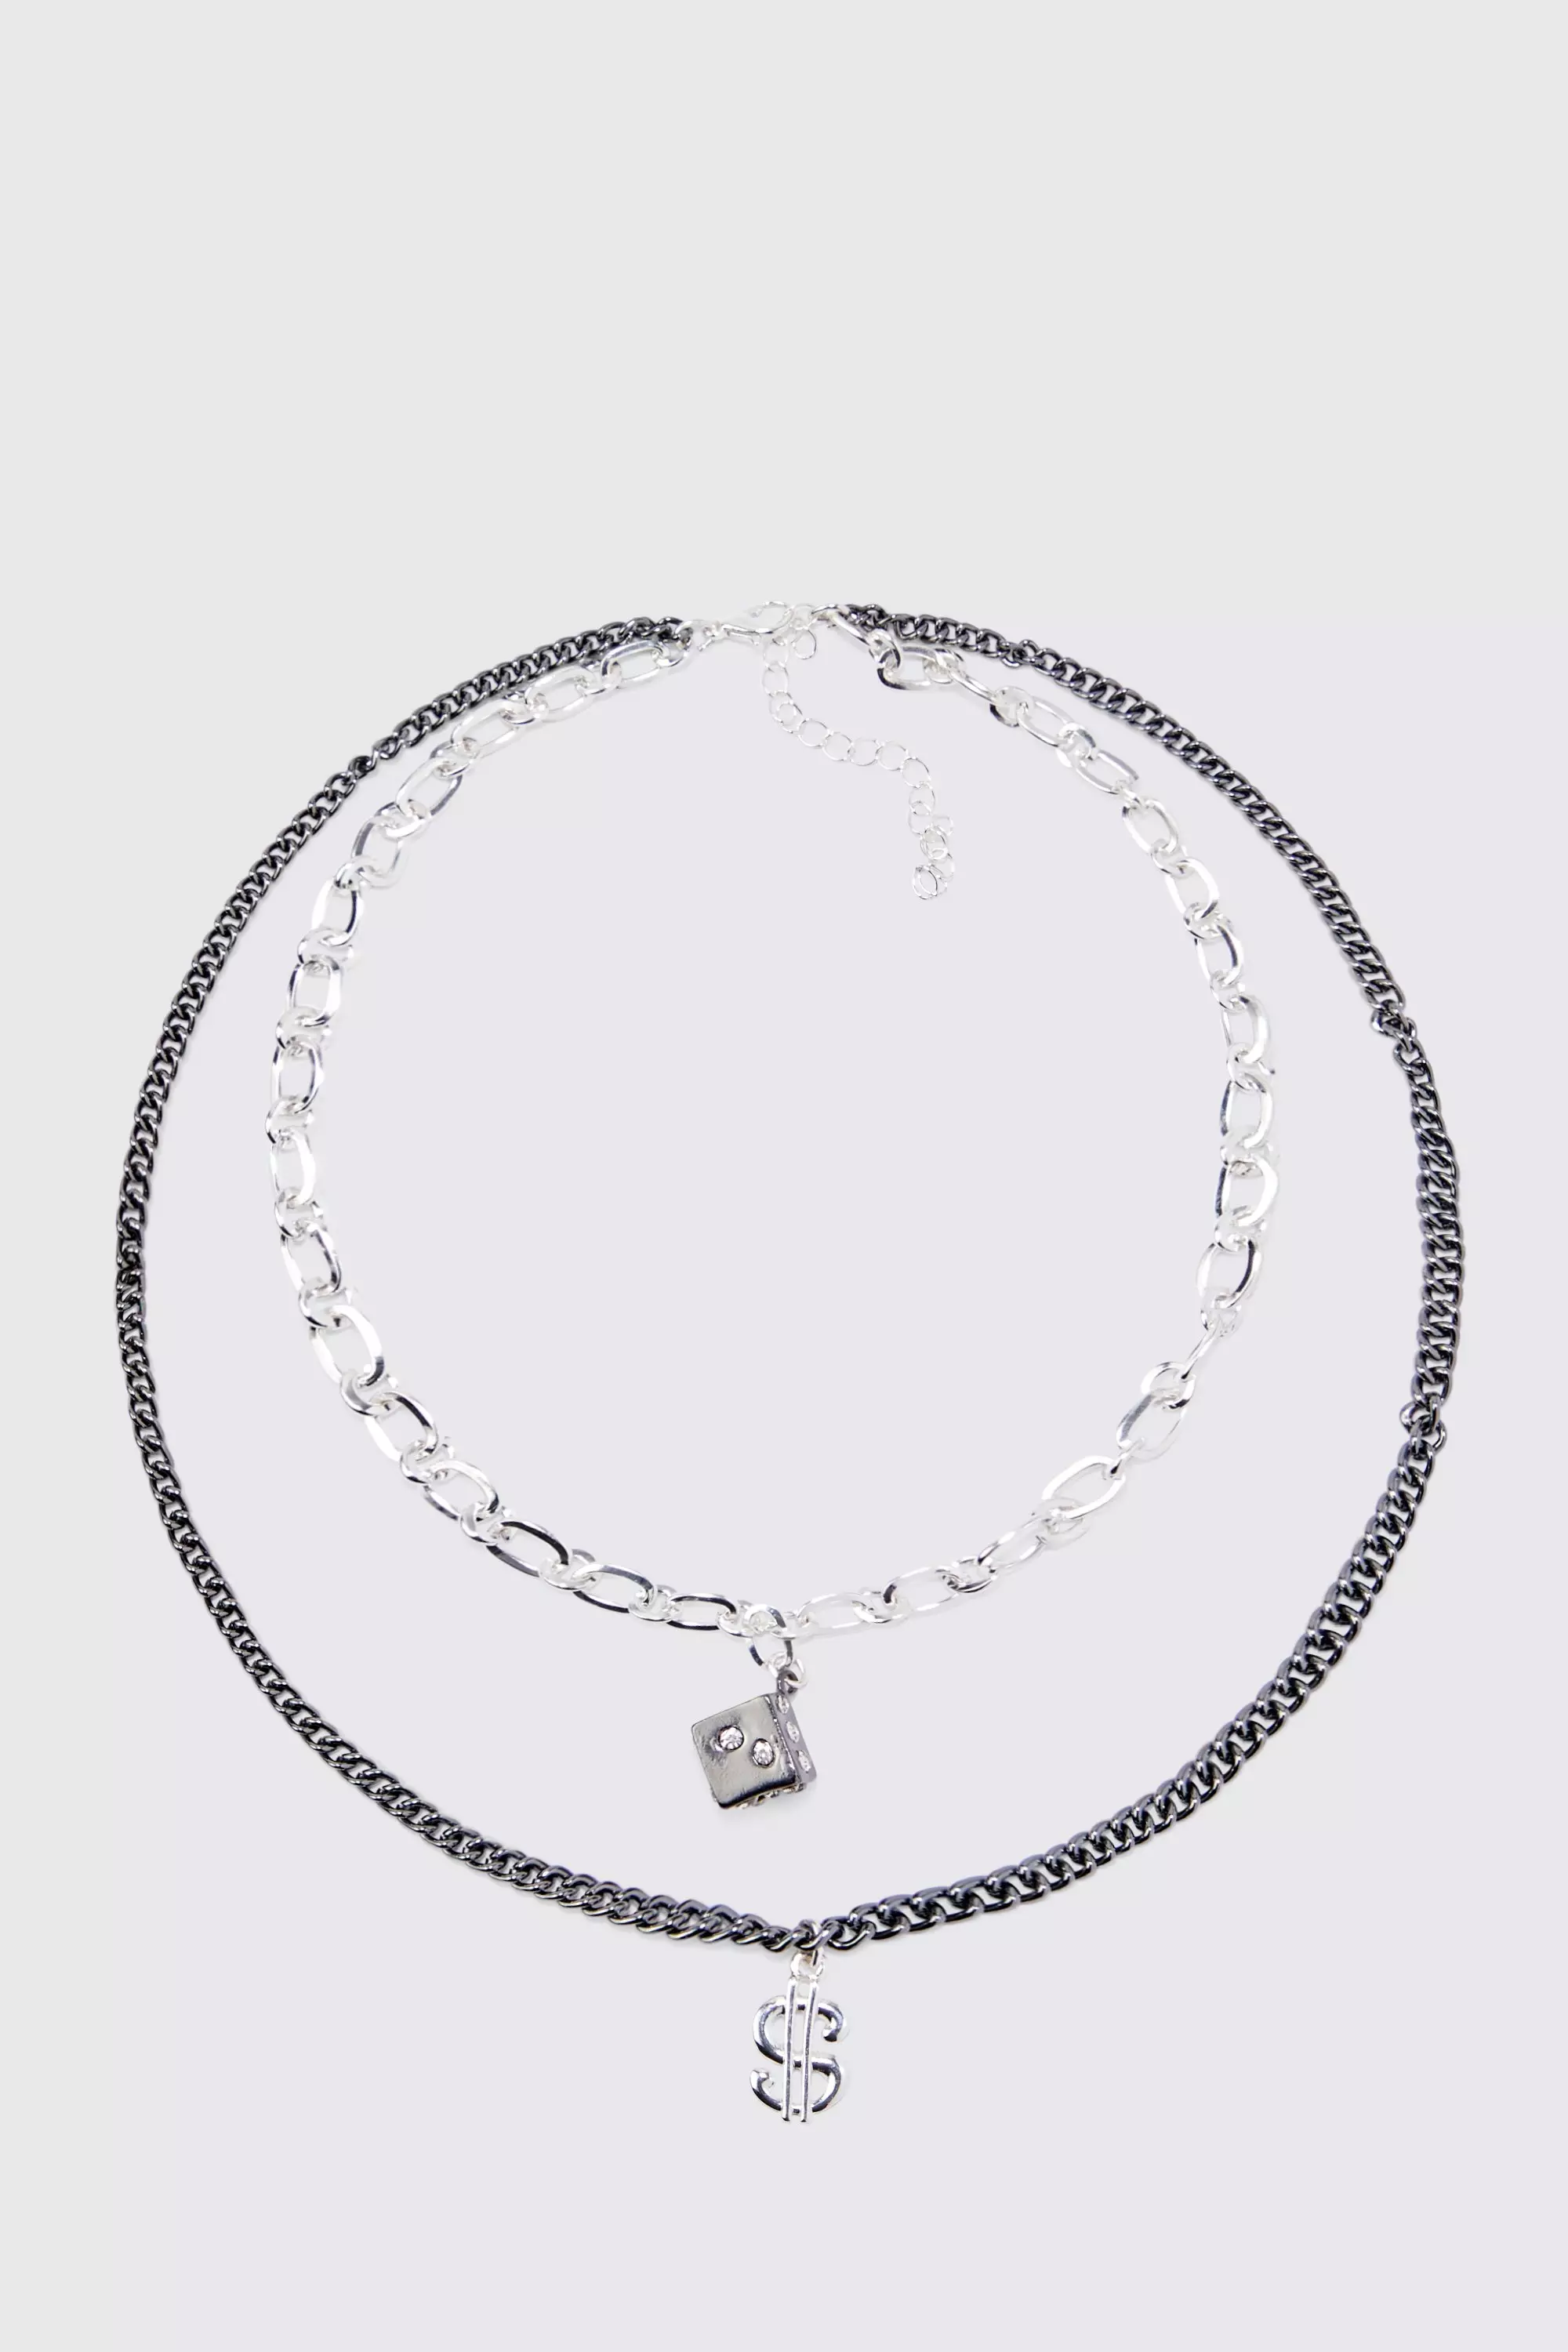 Multi Layer Pendant Detail Necklace Black